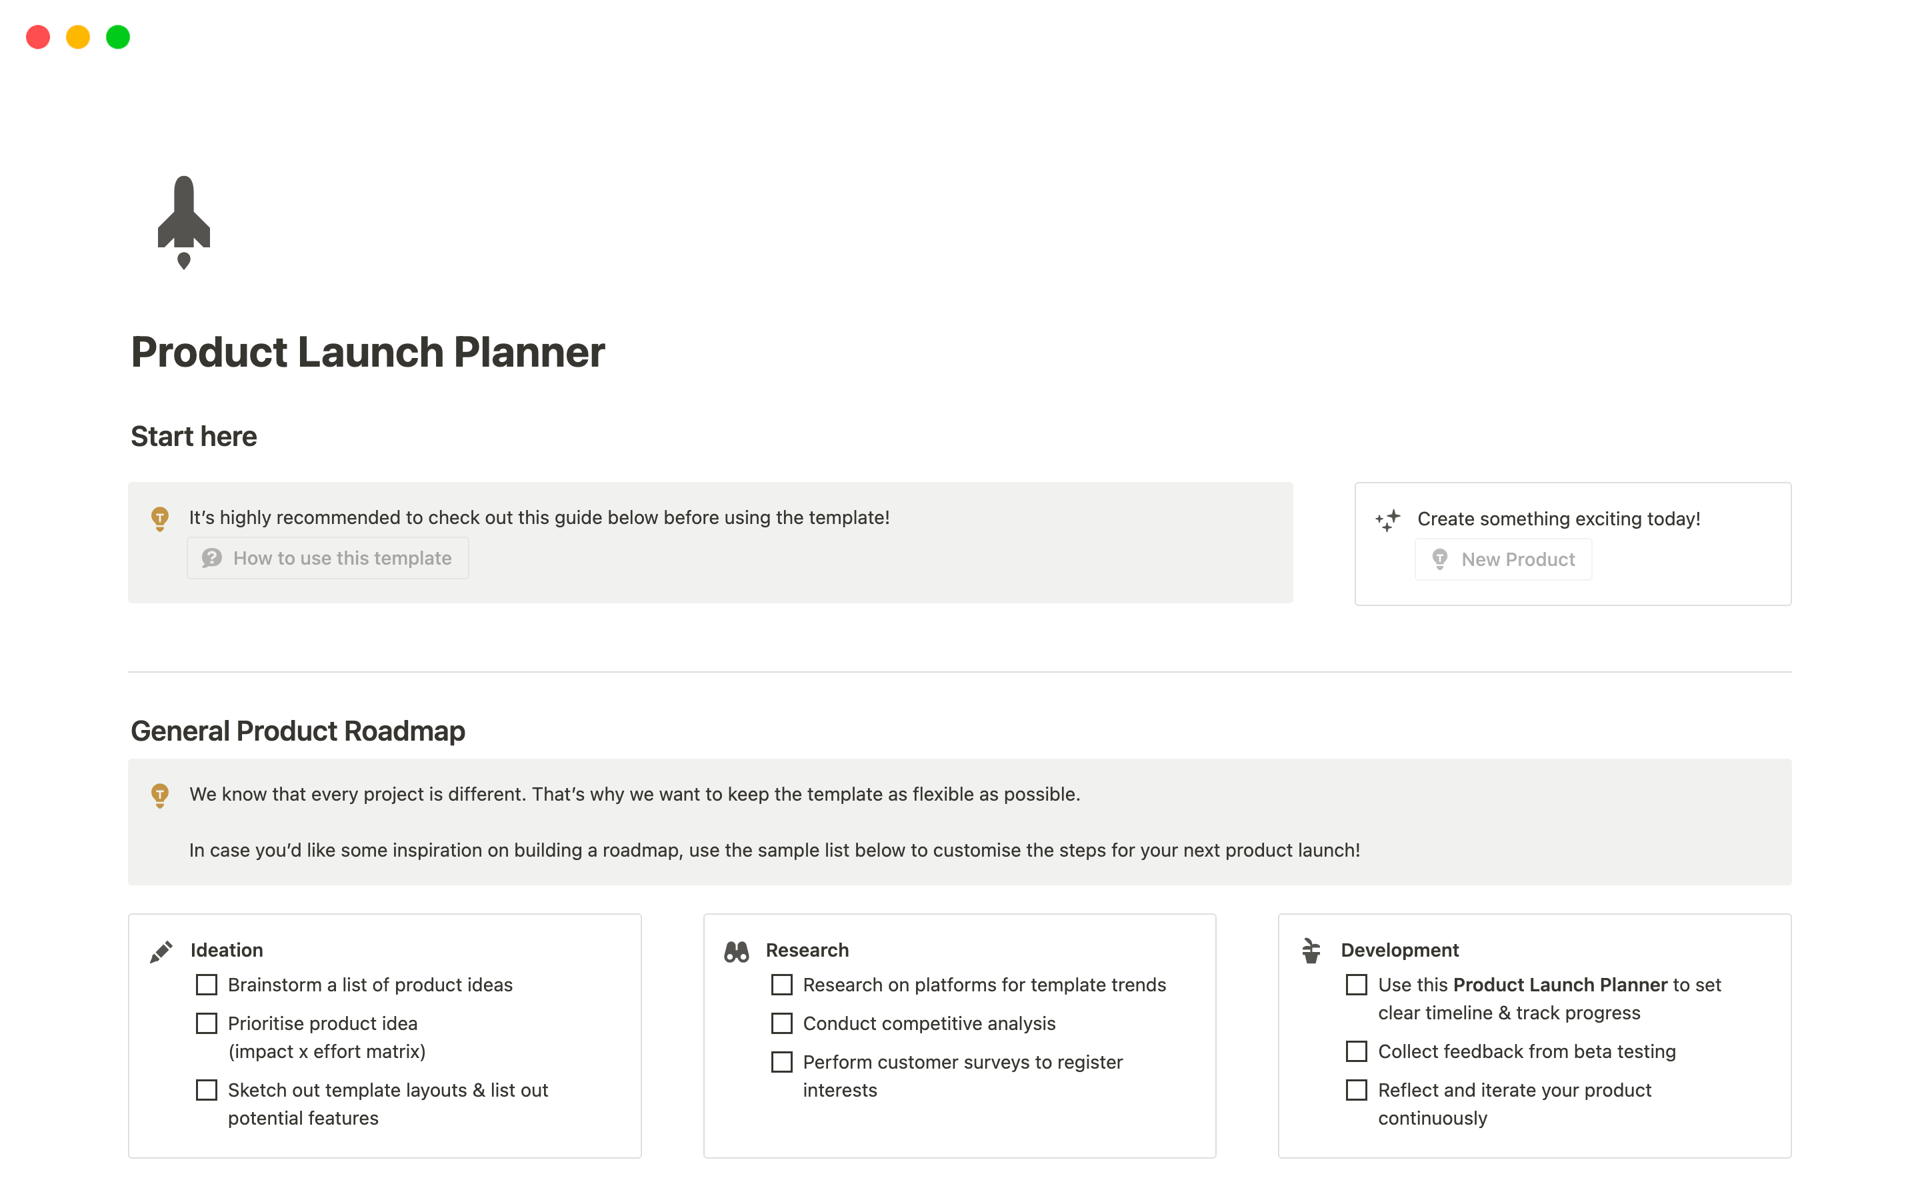 Uma prévia do modelo para Product Launch Planner